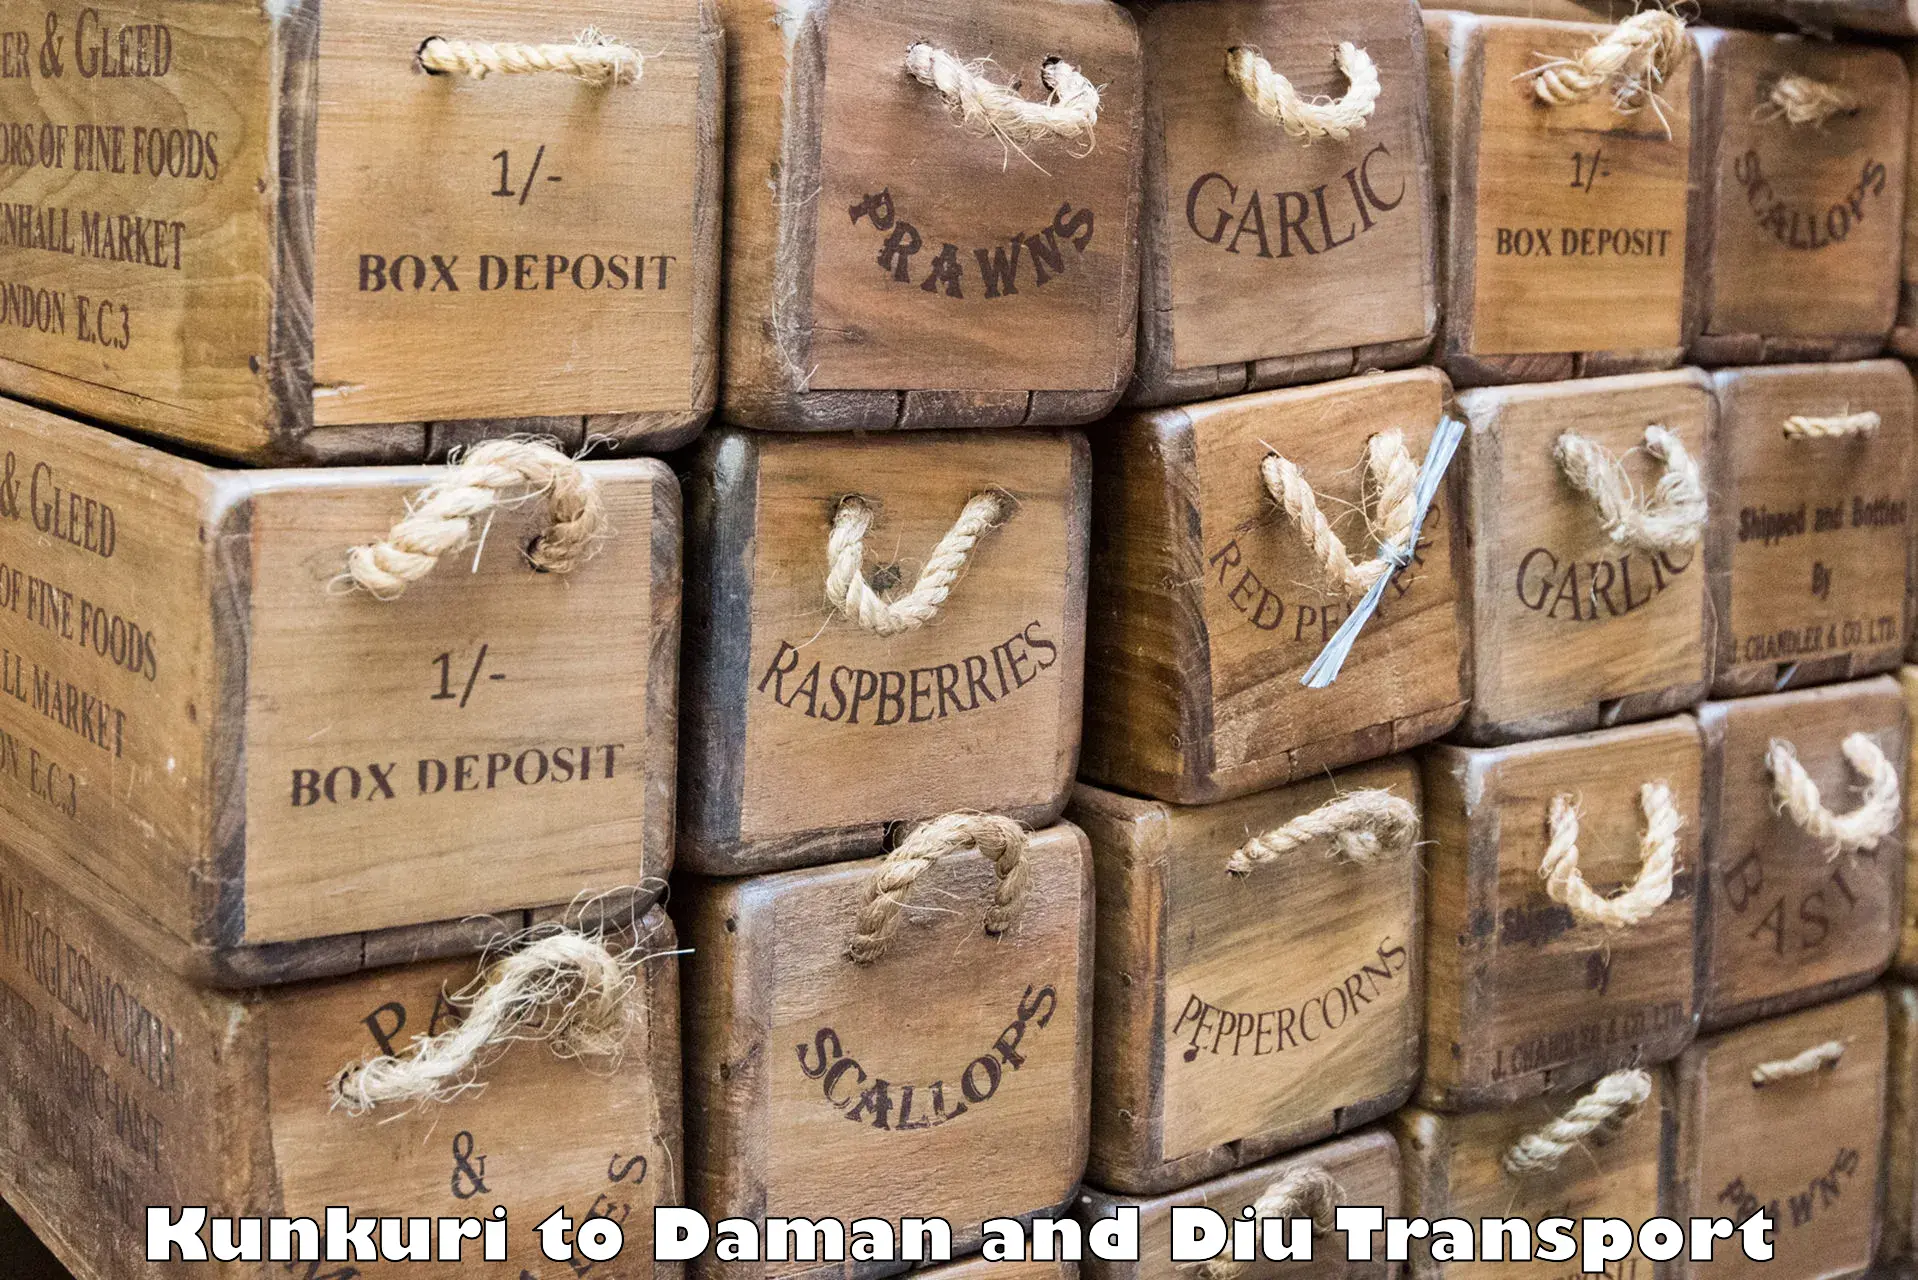 Pick up transport service Kunkuri to Daman and Diu